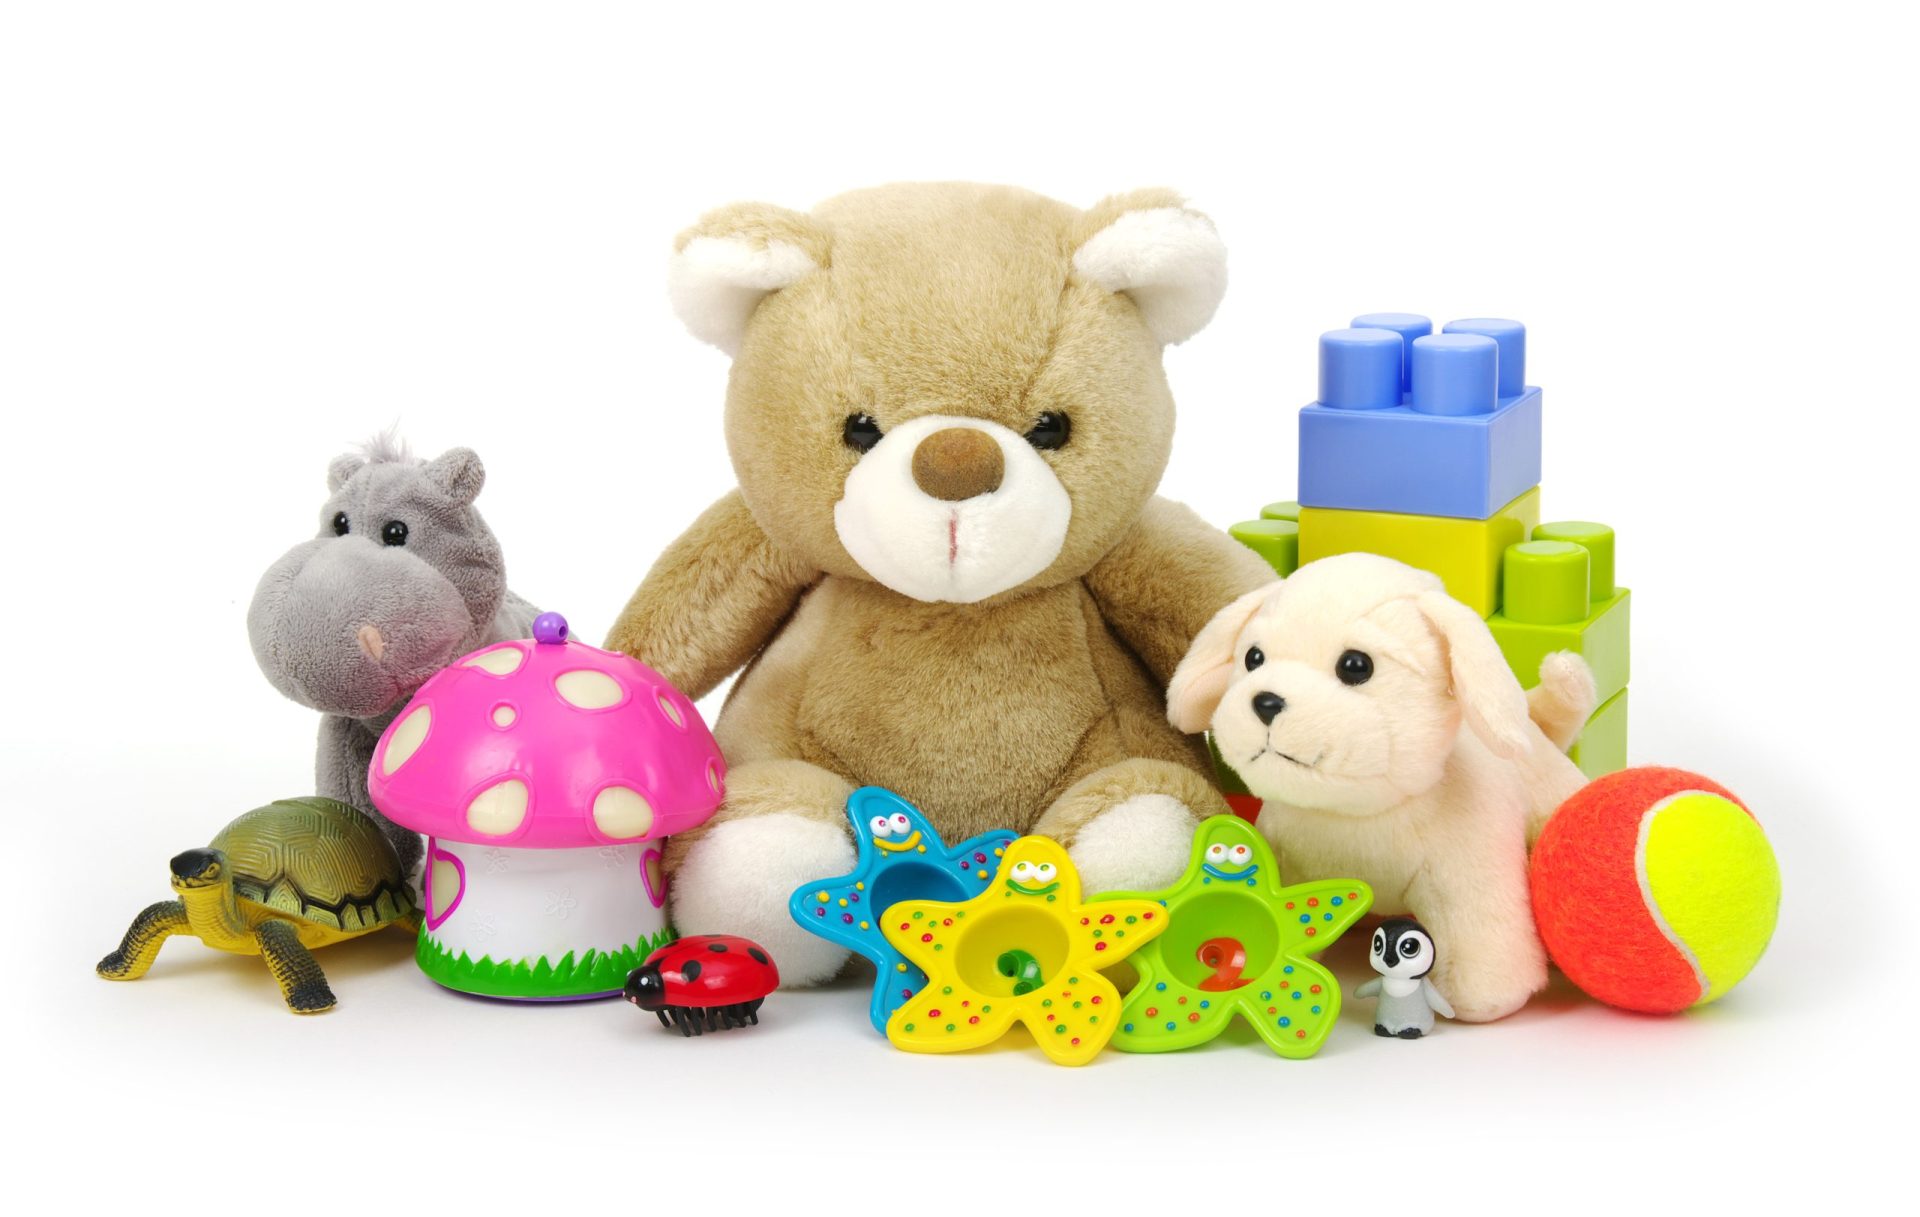 Aluguer de brinquedos, uma oportunidade de negócio criada pela crise